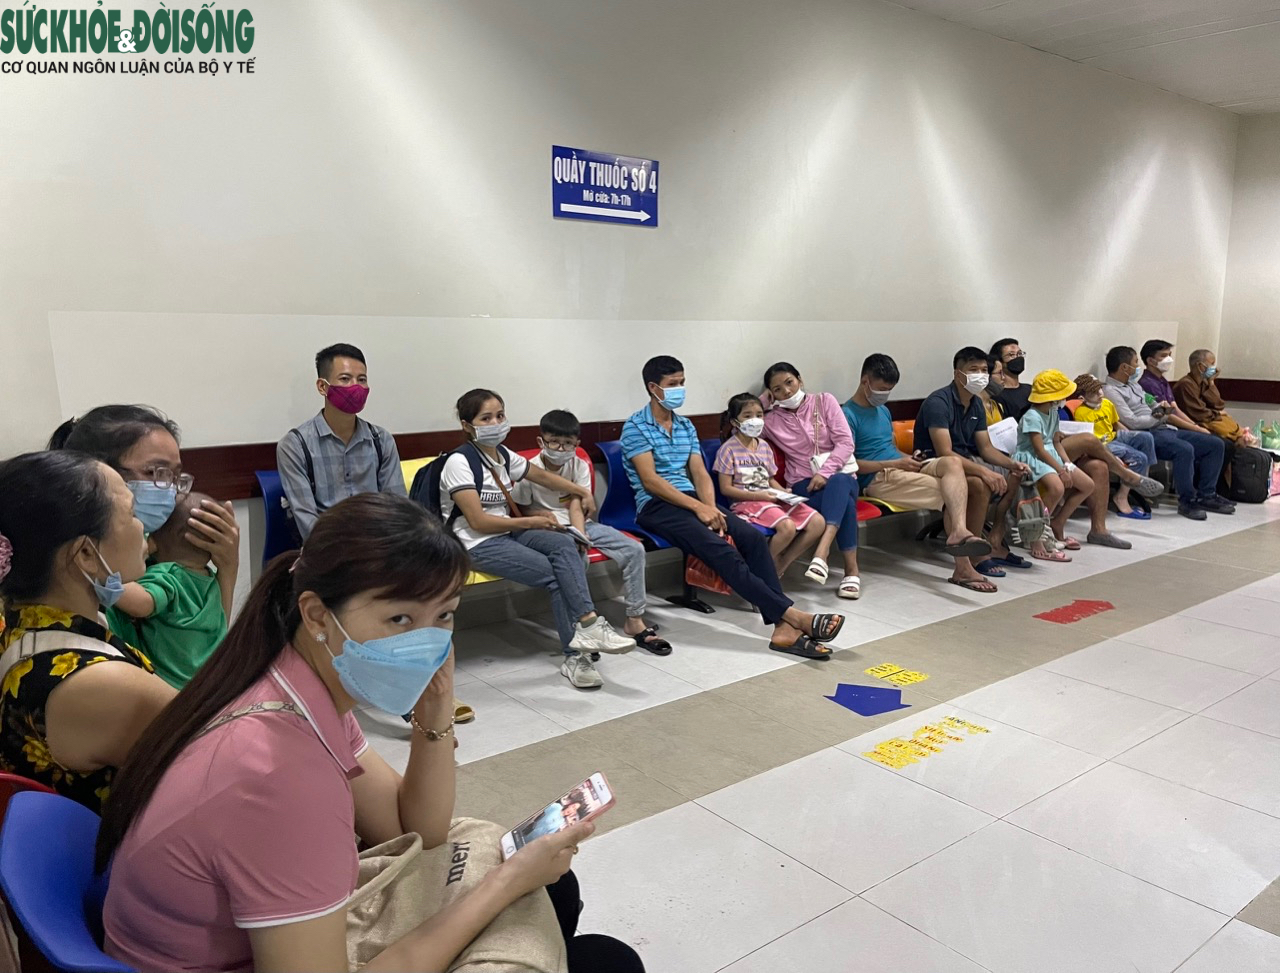 Nhiều bệnh viện tại Hà Nội quá tải do lượng bệnh nhi tăng đột biến - Ảnh 3.